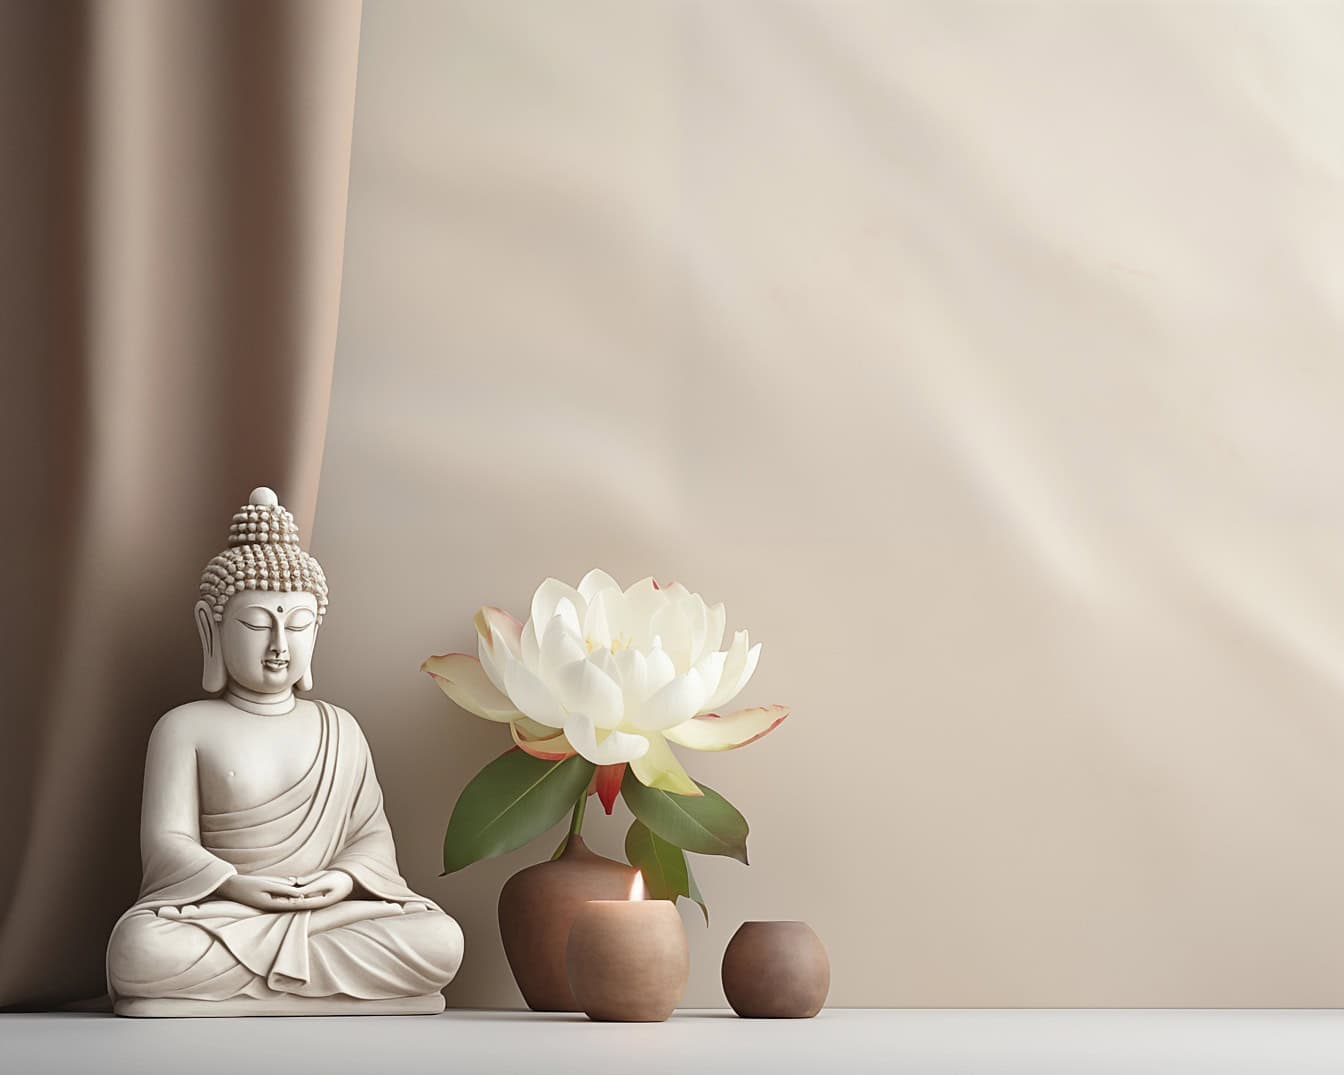 En hvit buddhastatue sittende ved siden av en hvit lotusblomst, en illustrasjon som viser zen-meditasjon